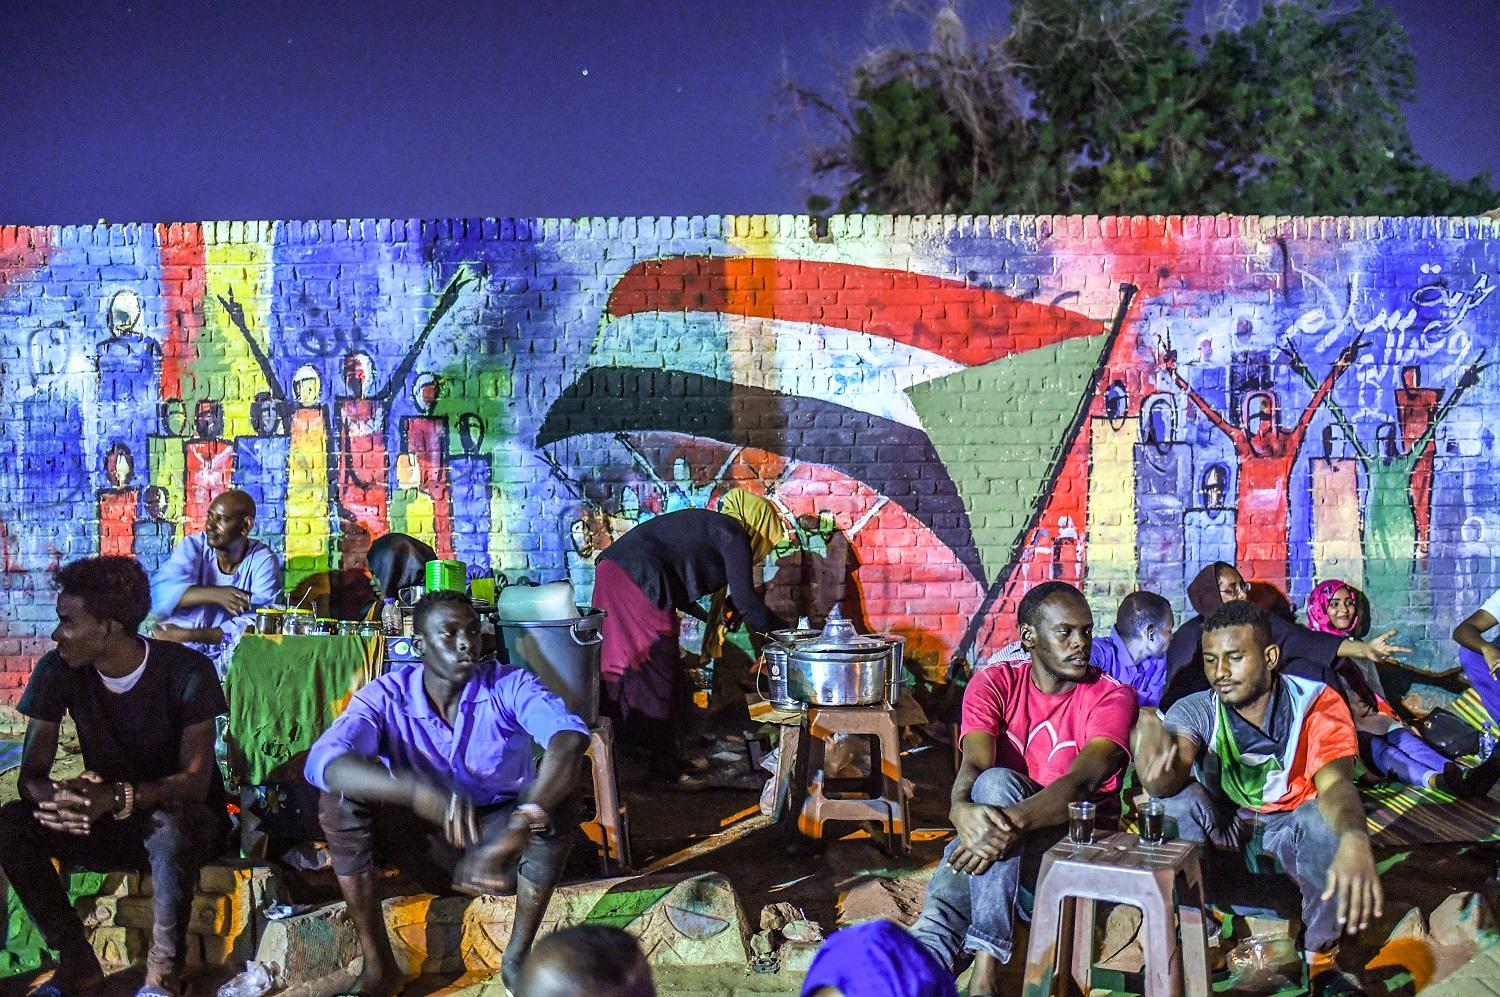 سودانيون يجلسون أمام جدارية تجسد الاحتجاجات الشعبية في الخرطوم، 24 نيسان/أبريل 2019. (أ ف ب)